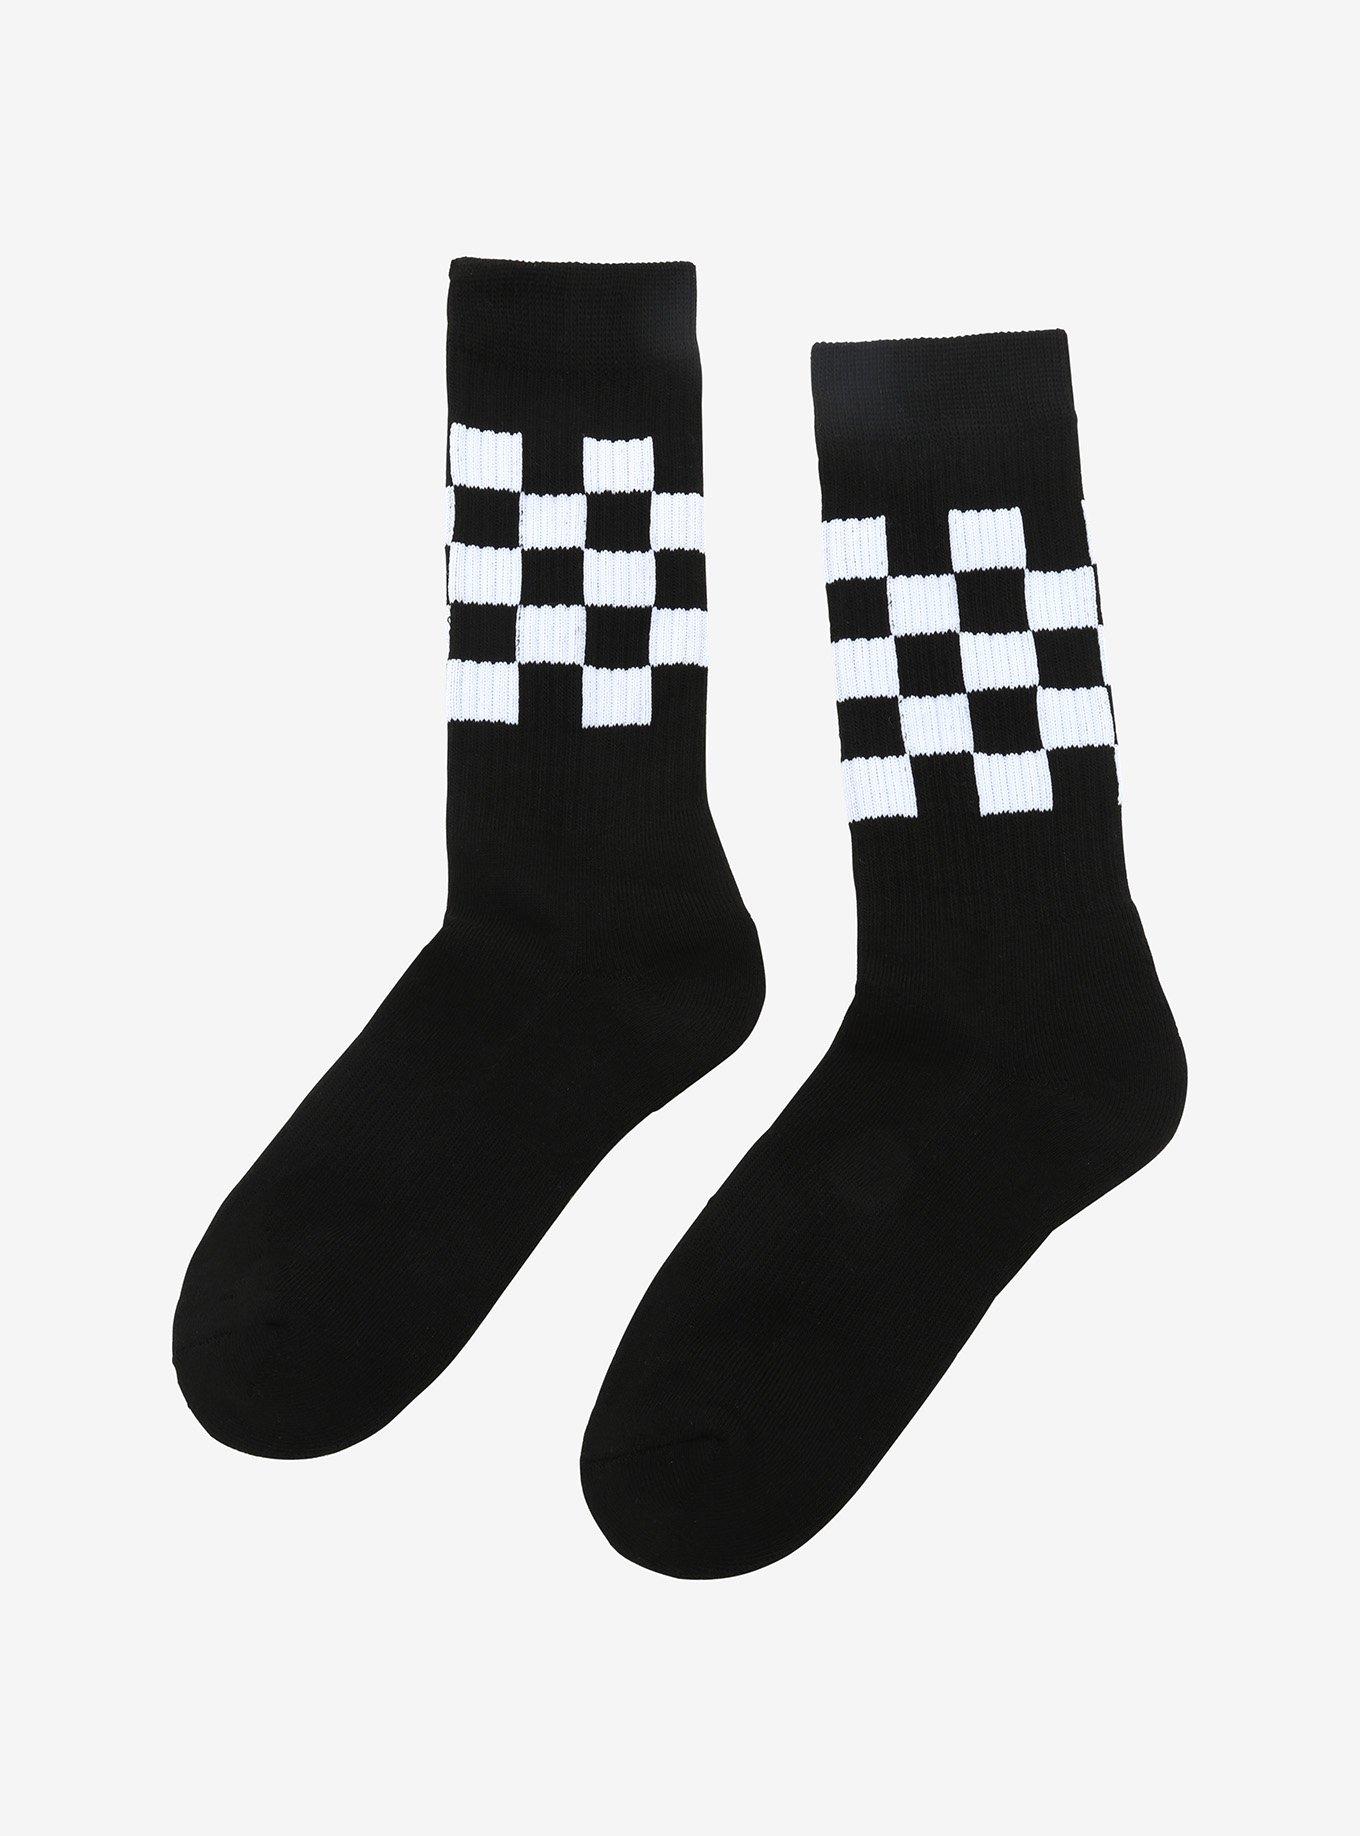 Black & White Checkered Crew Socks, , alternate